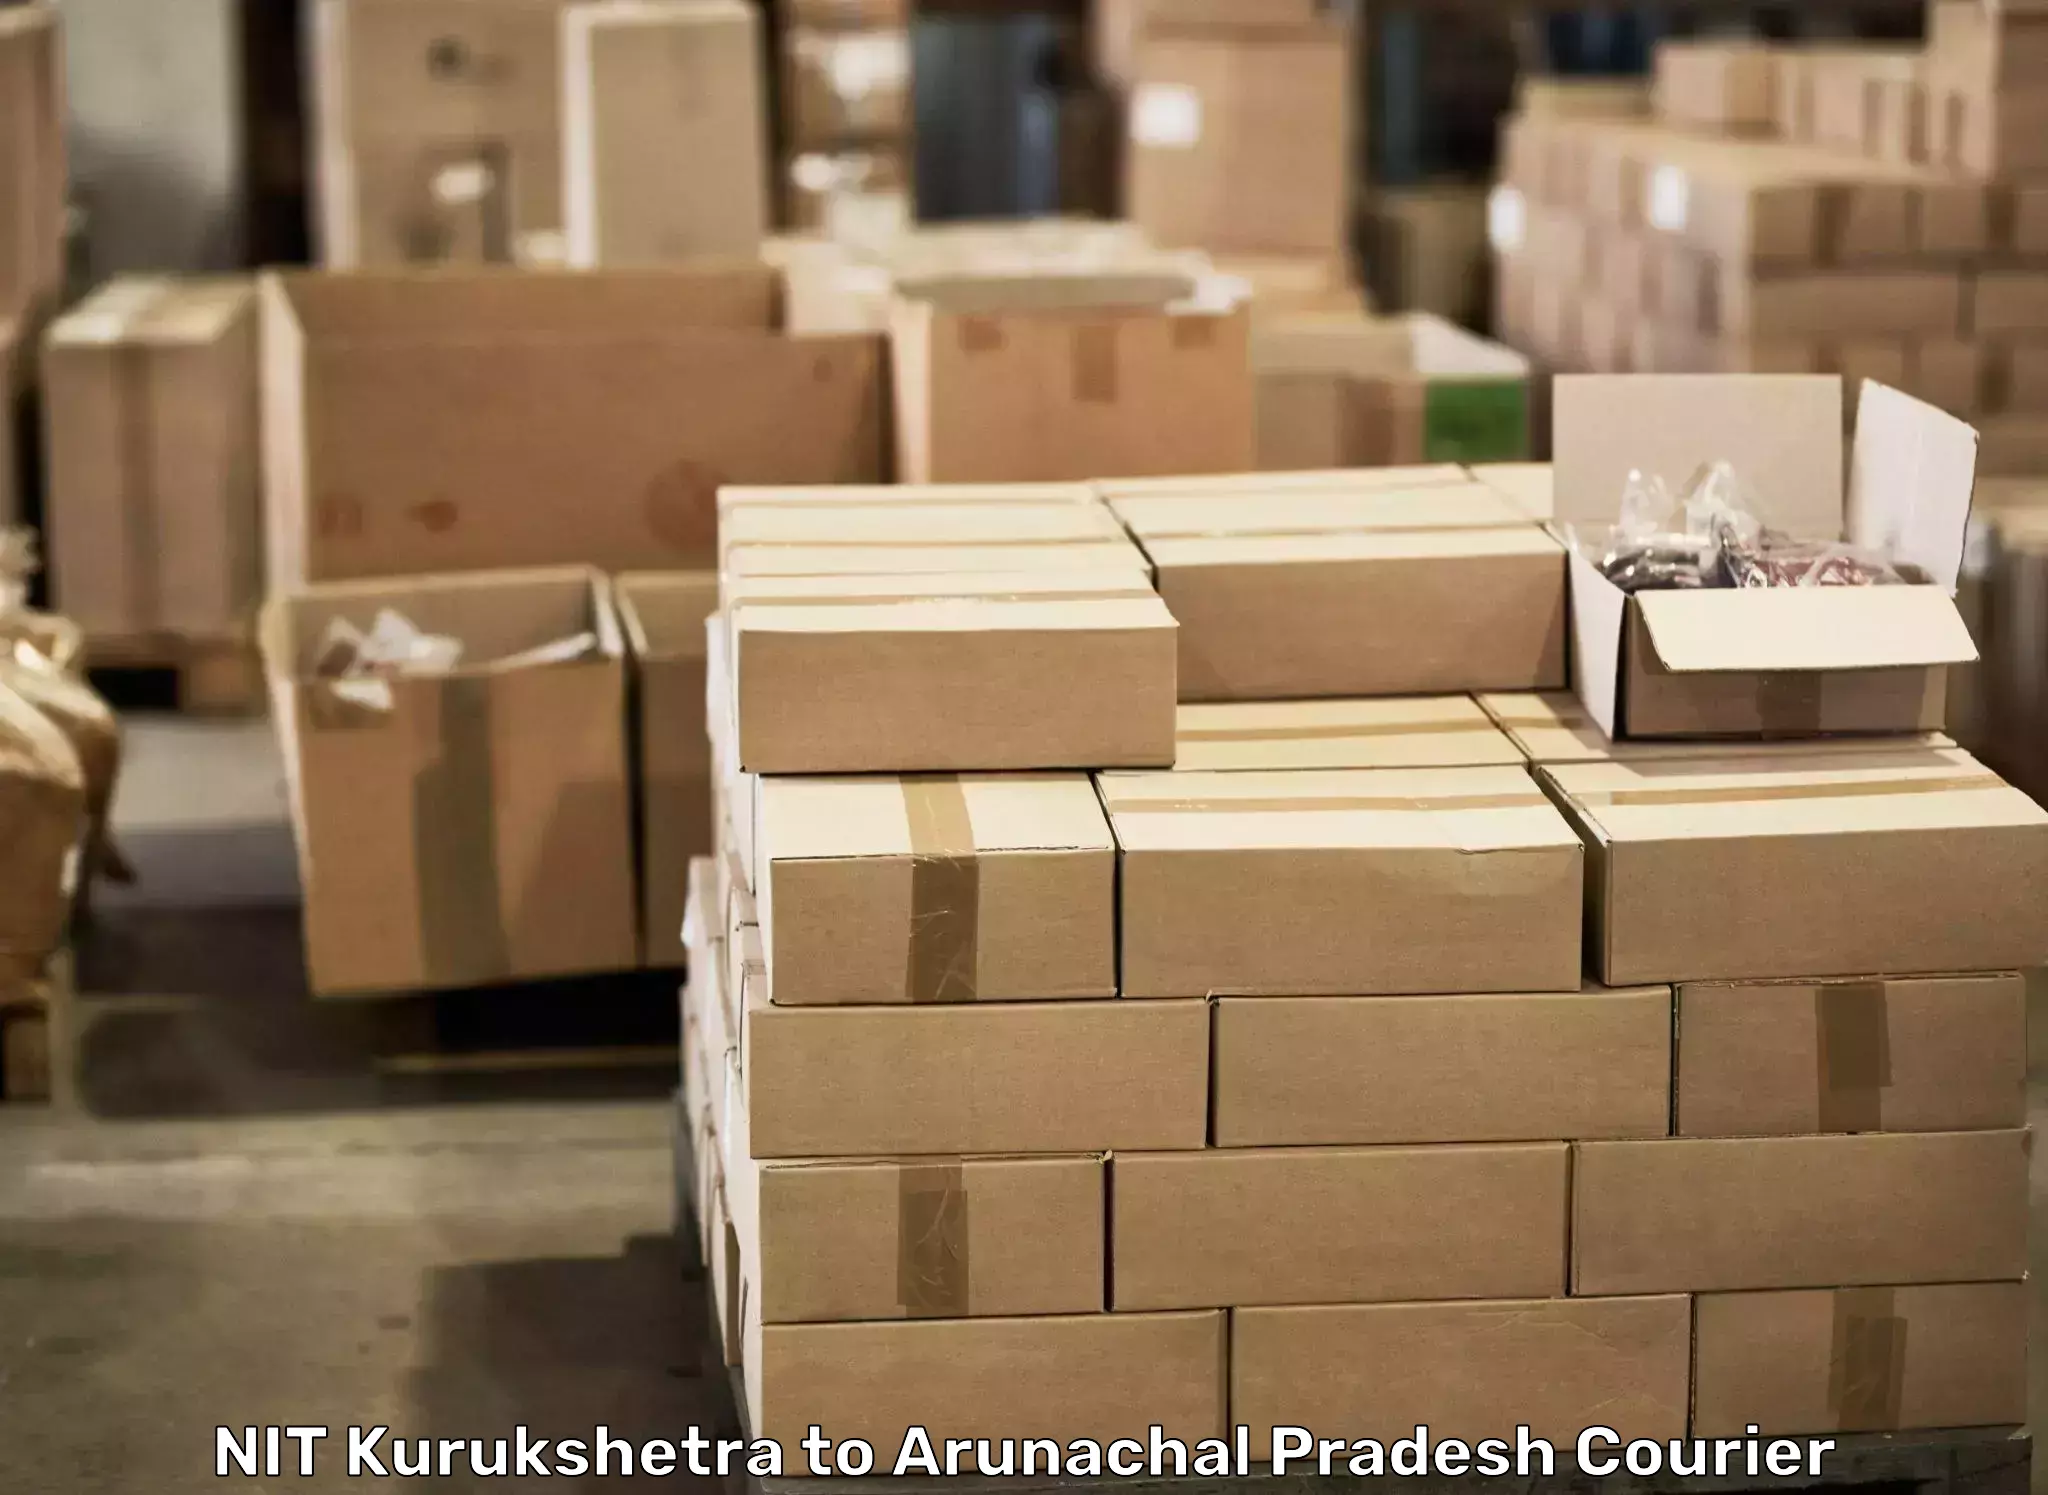 Professional movers and packers NIT Kurukshetra to Lower Subansiri